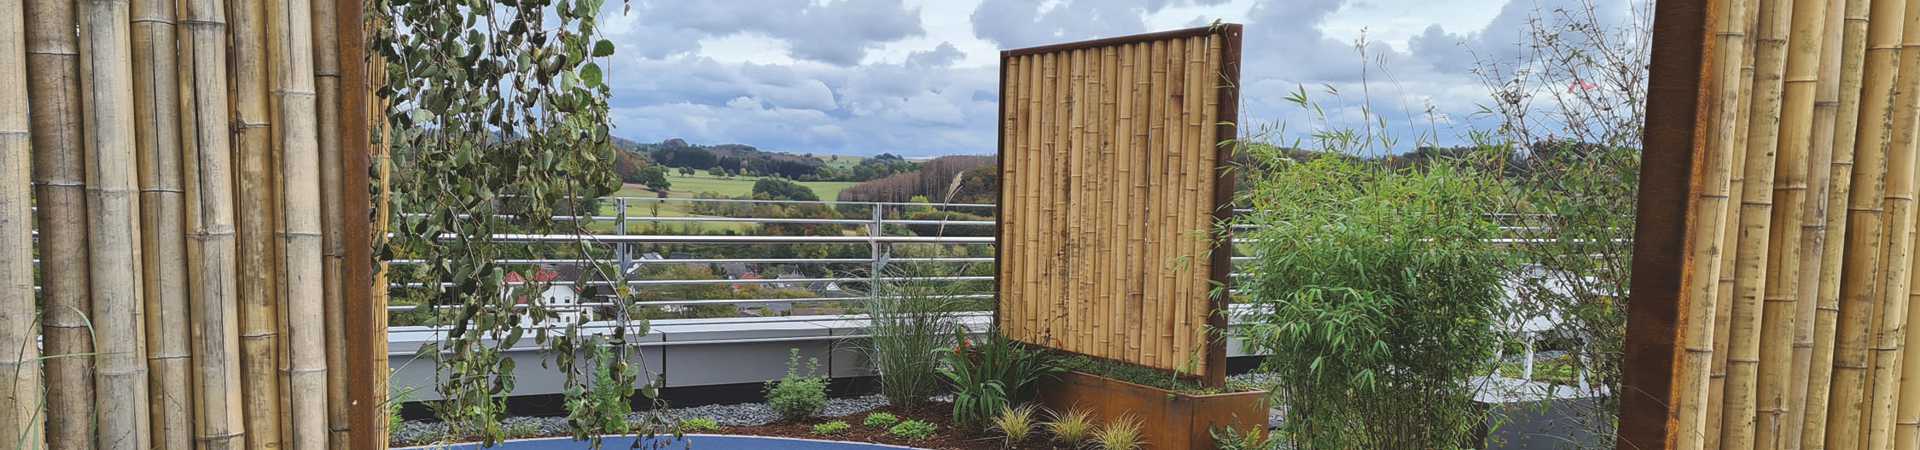 Sichtschutzwand aus Metallrahmen mit Bambusfüllung